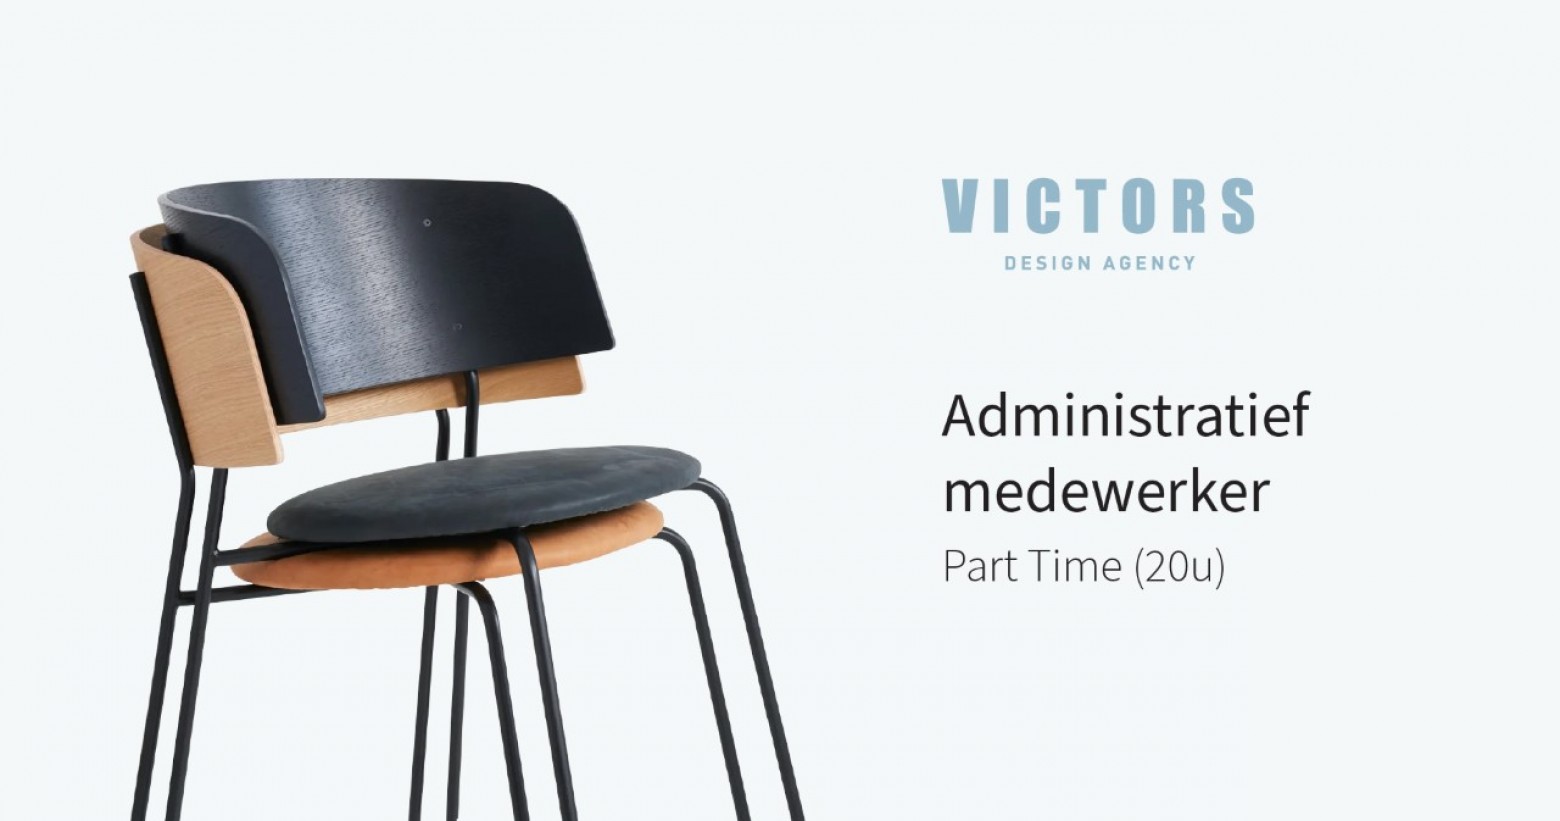  Victors Design Agency